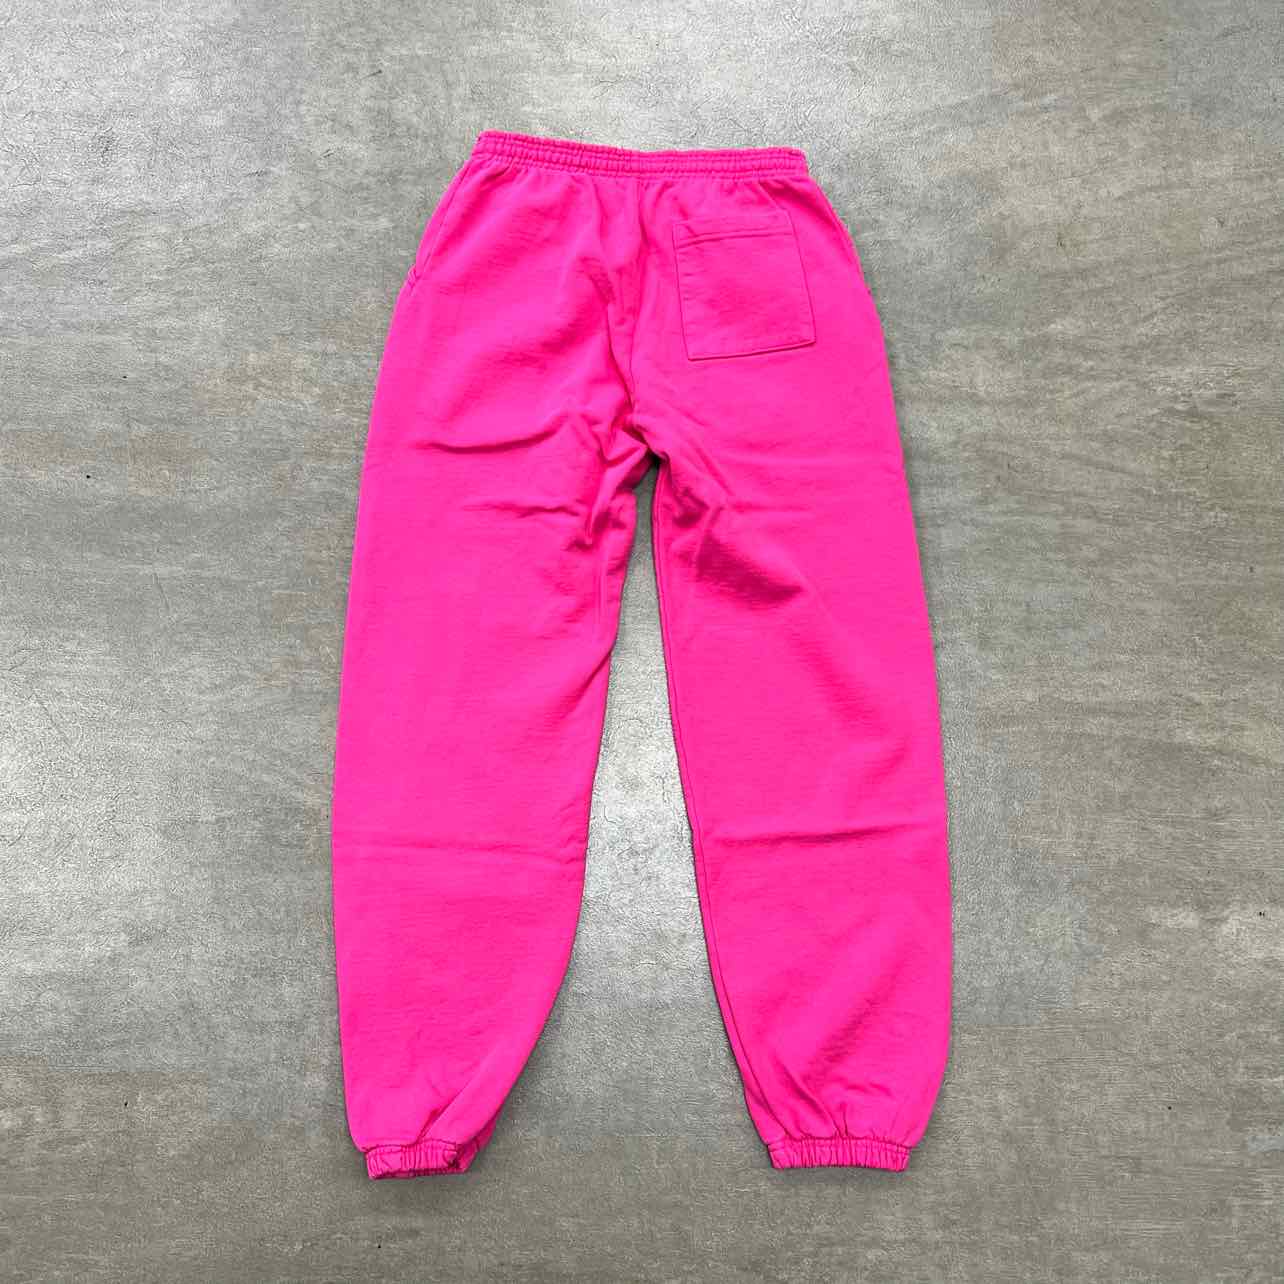 Sp5der Sweatpants &quot;P*NK&quot; Pink New Size L